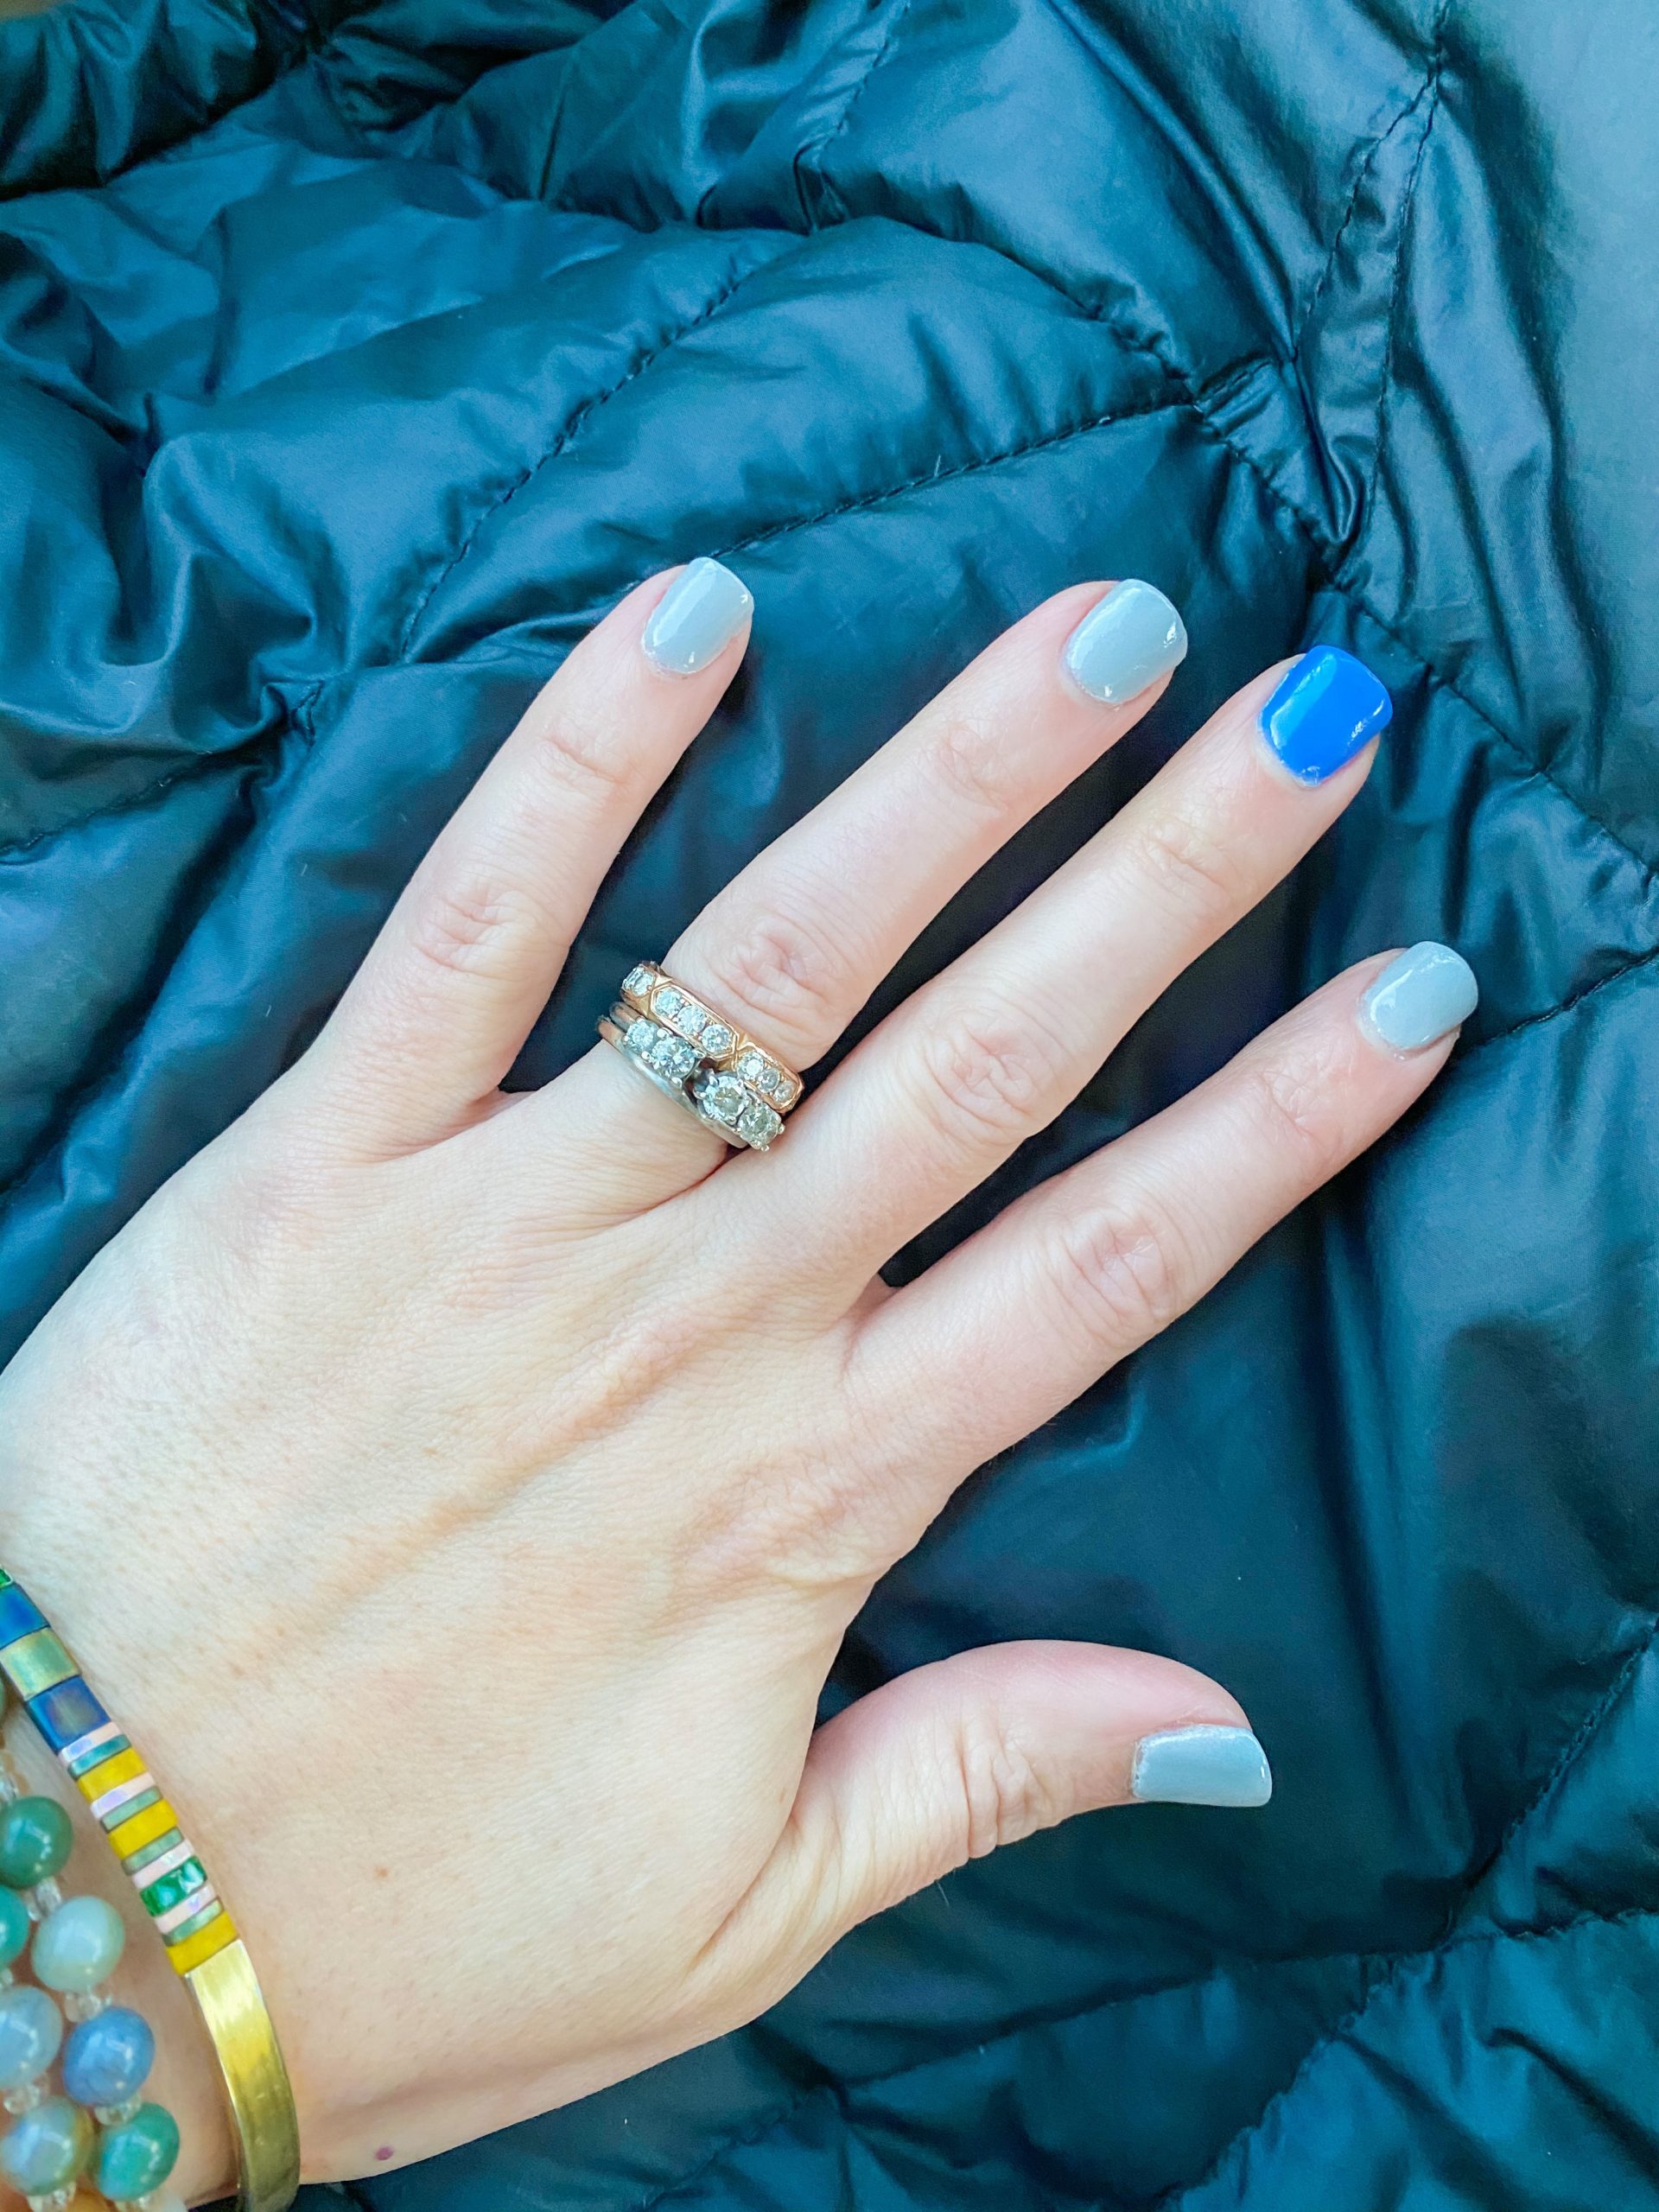 Acrylics gel nails ruined real nails : r/DipPowderNails